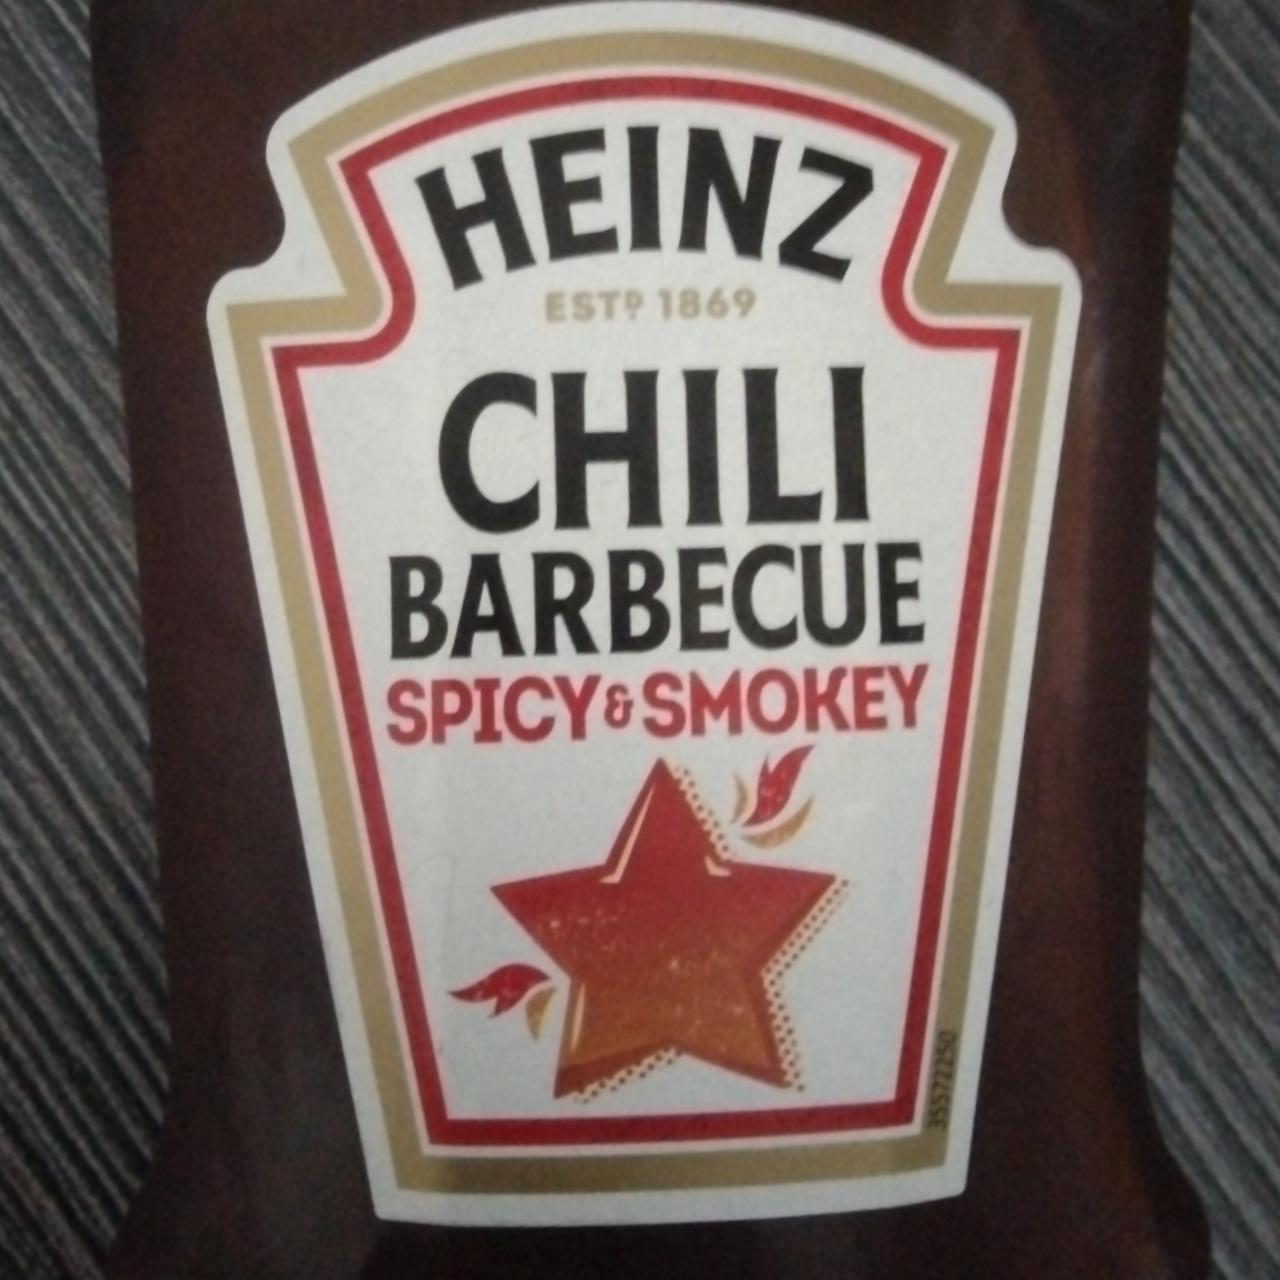 Fotografie - Chili Barbecue Spicy & Smokey Heinz